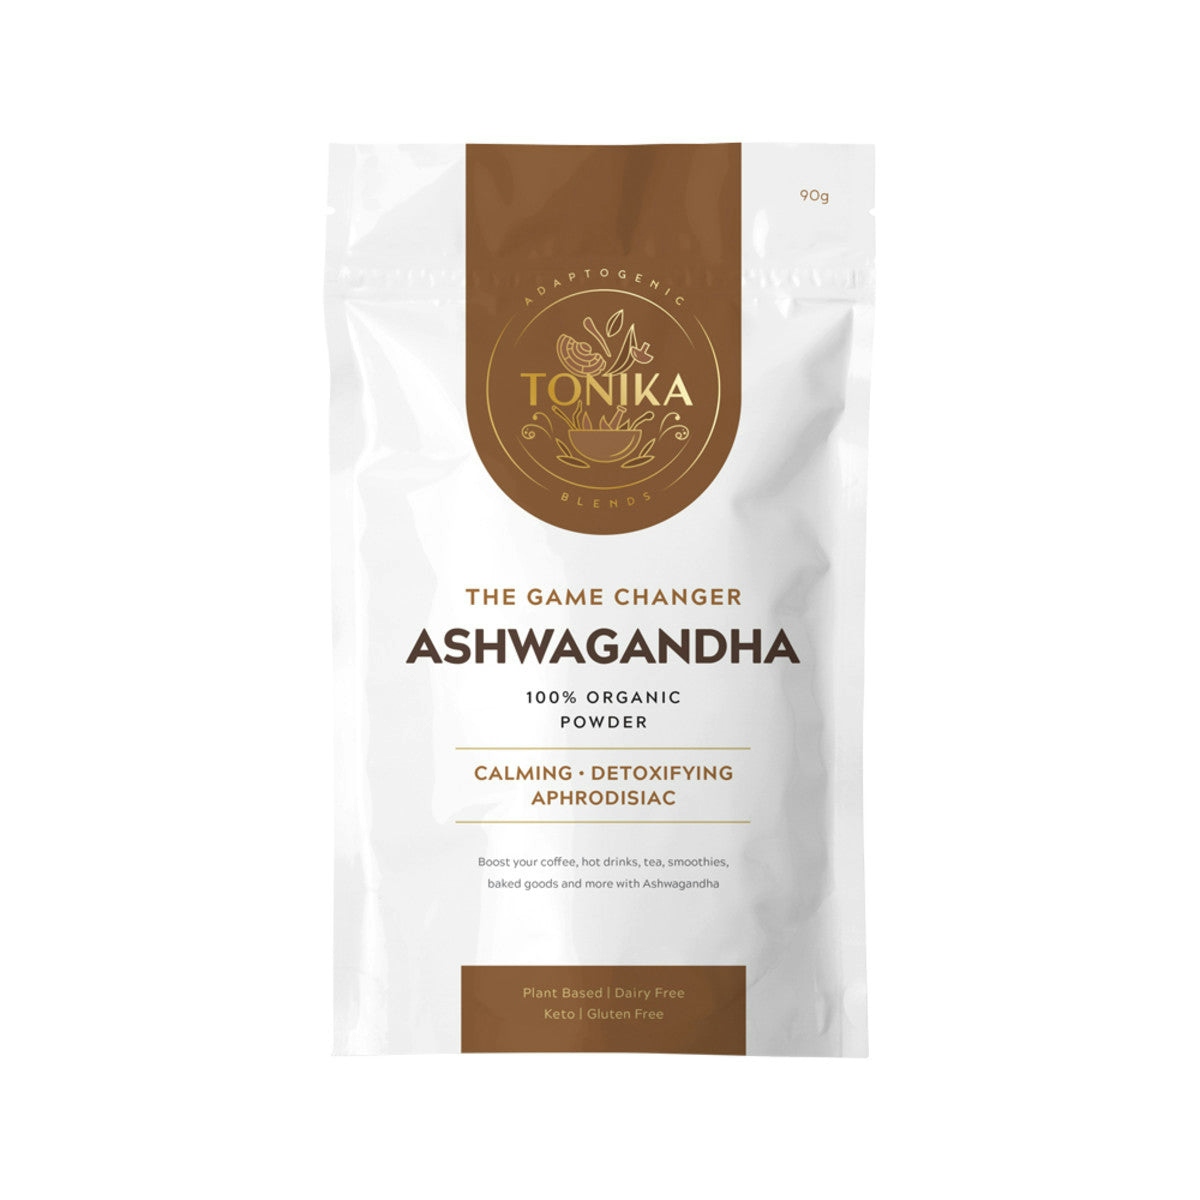 image of Tonika 100% Organic Powder Ashwagandha (The Game Changer) 90g on white background 